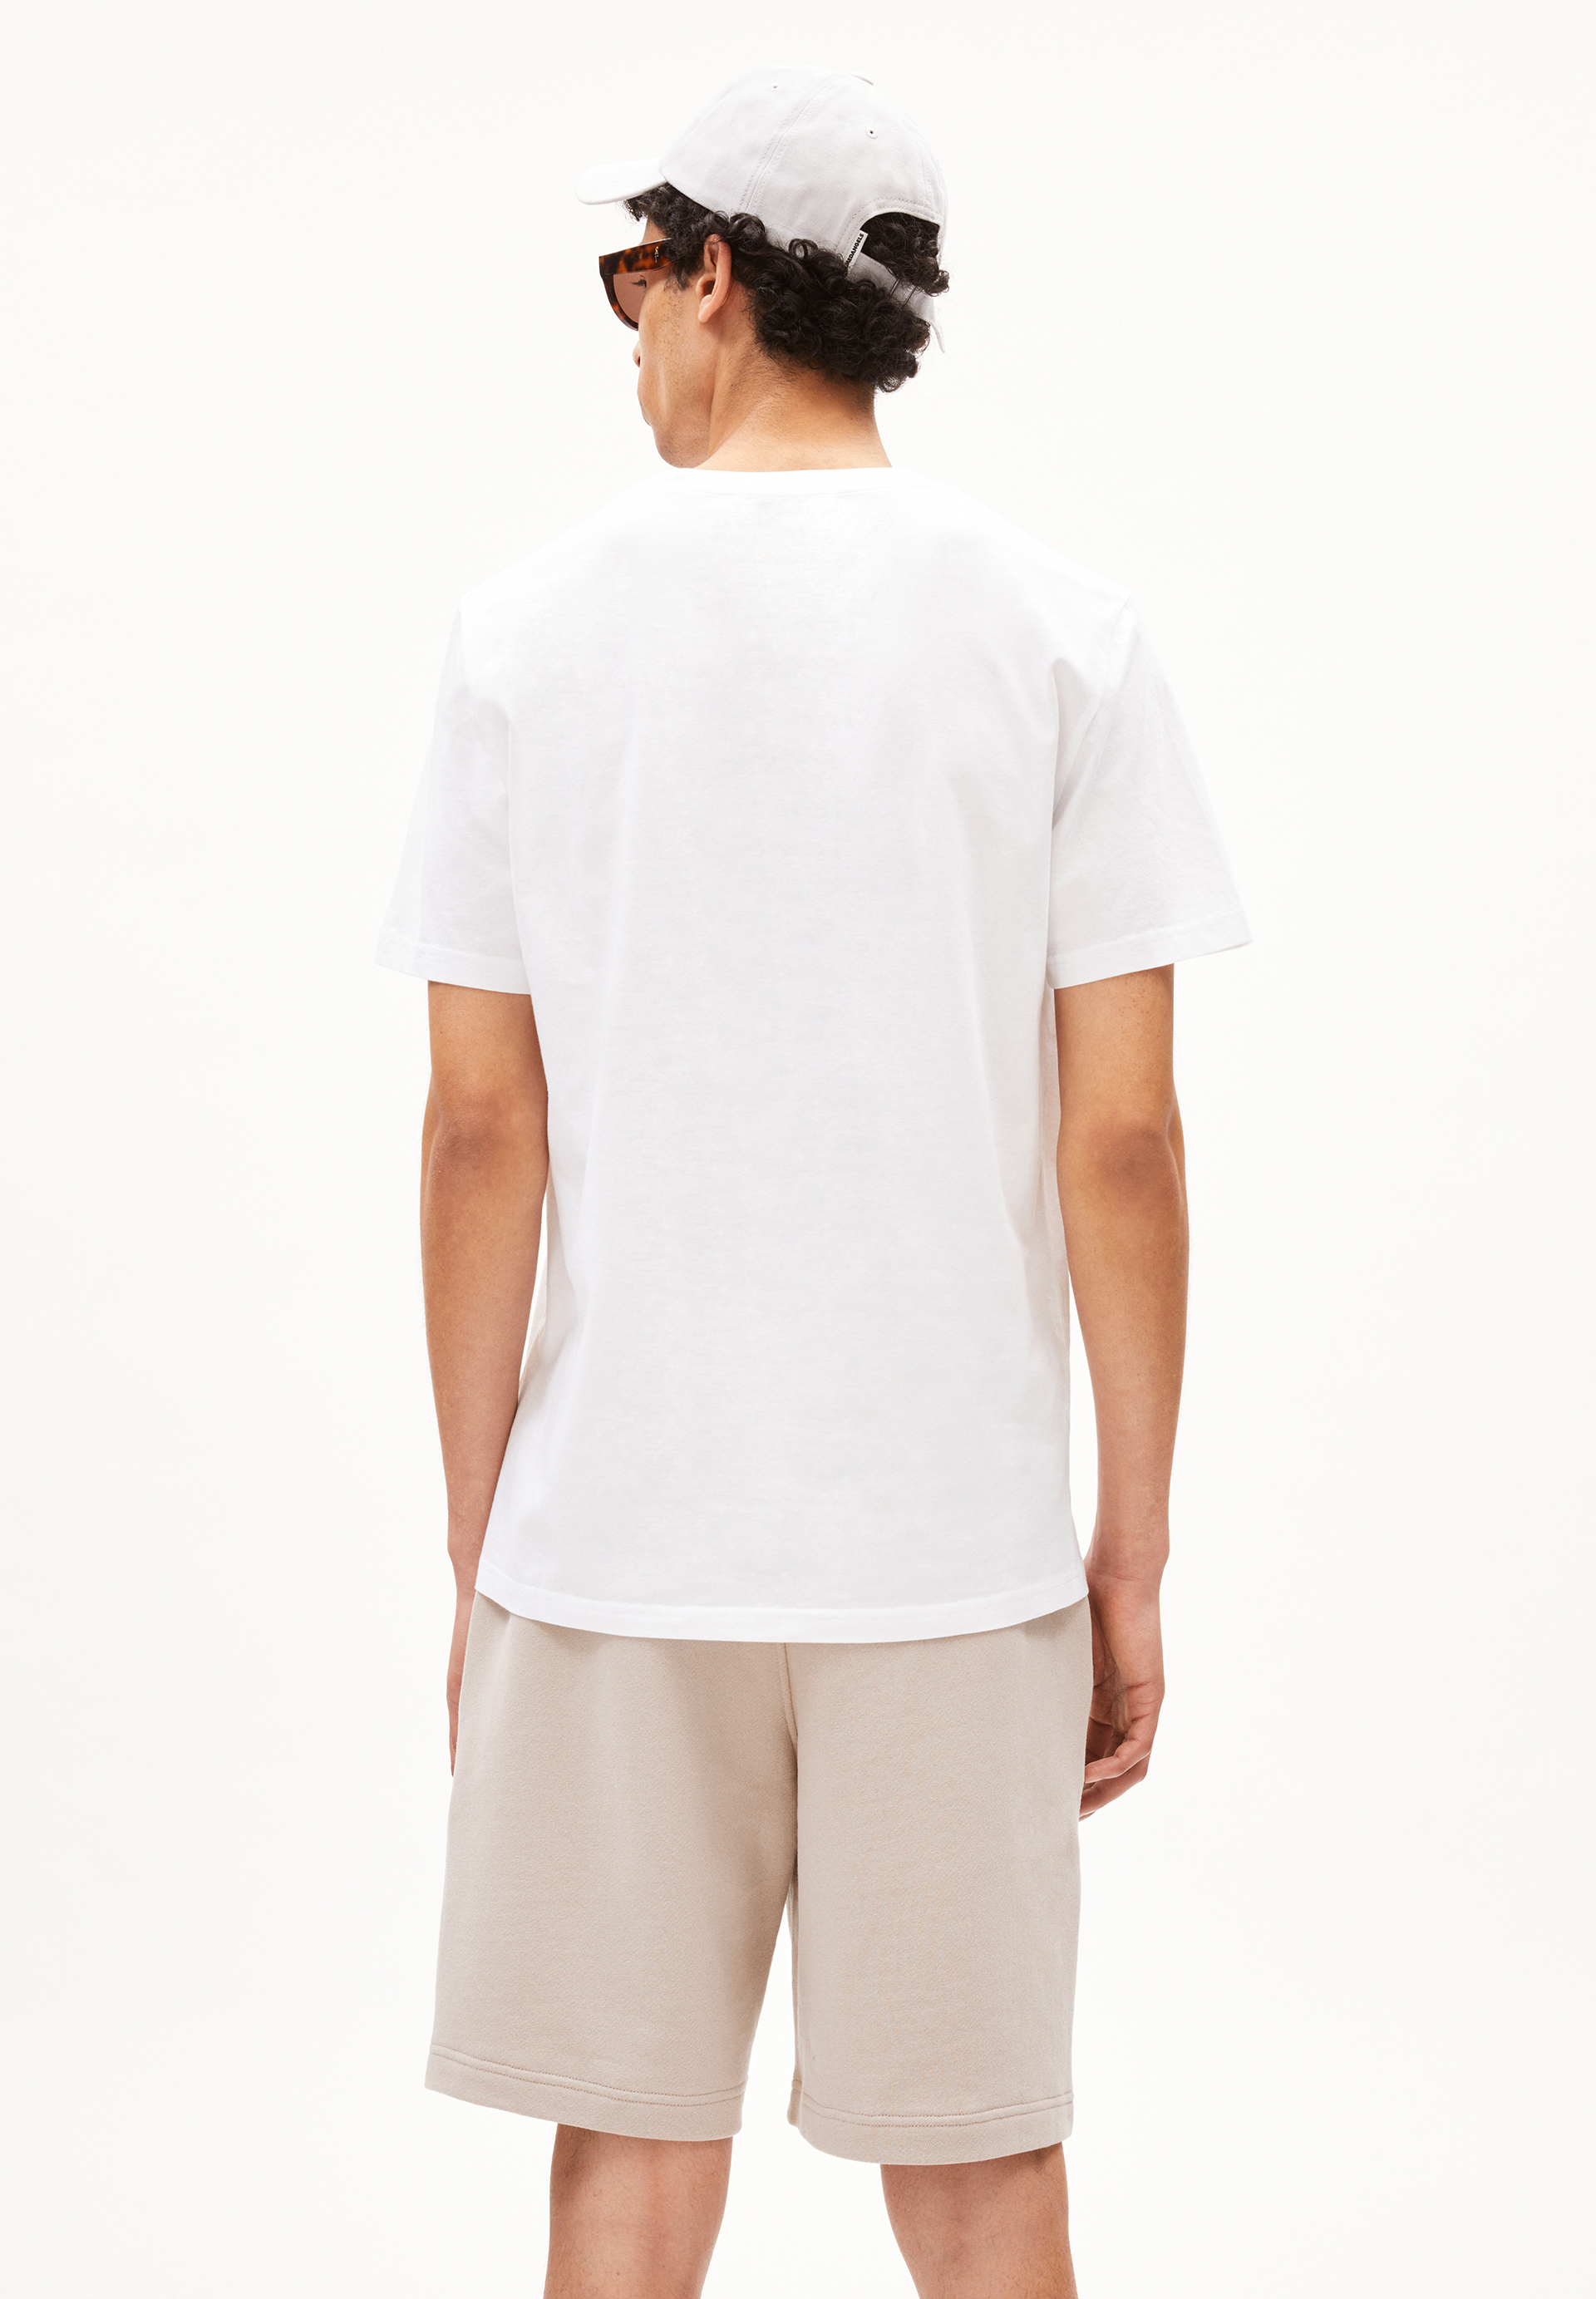 JAAMES CLOUD BIKE T-Shirt Regular Fit made of Organic Cotton